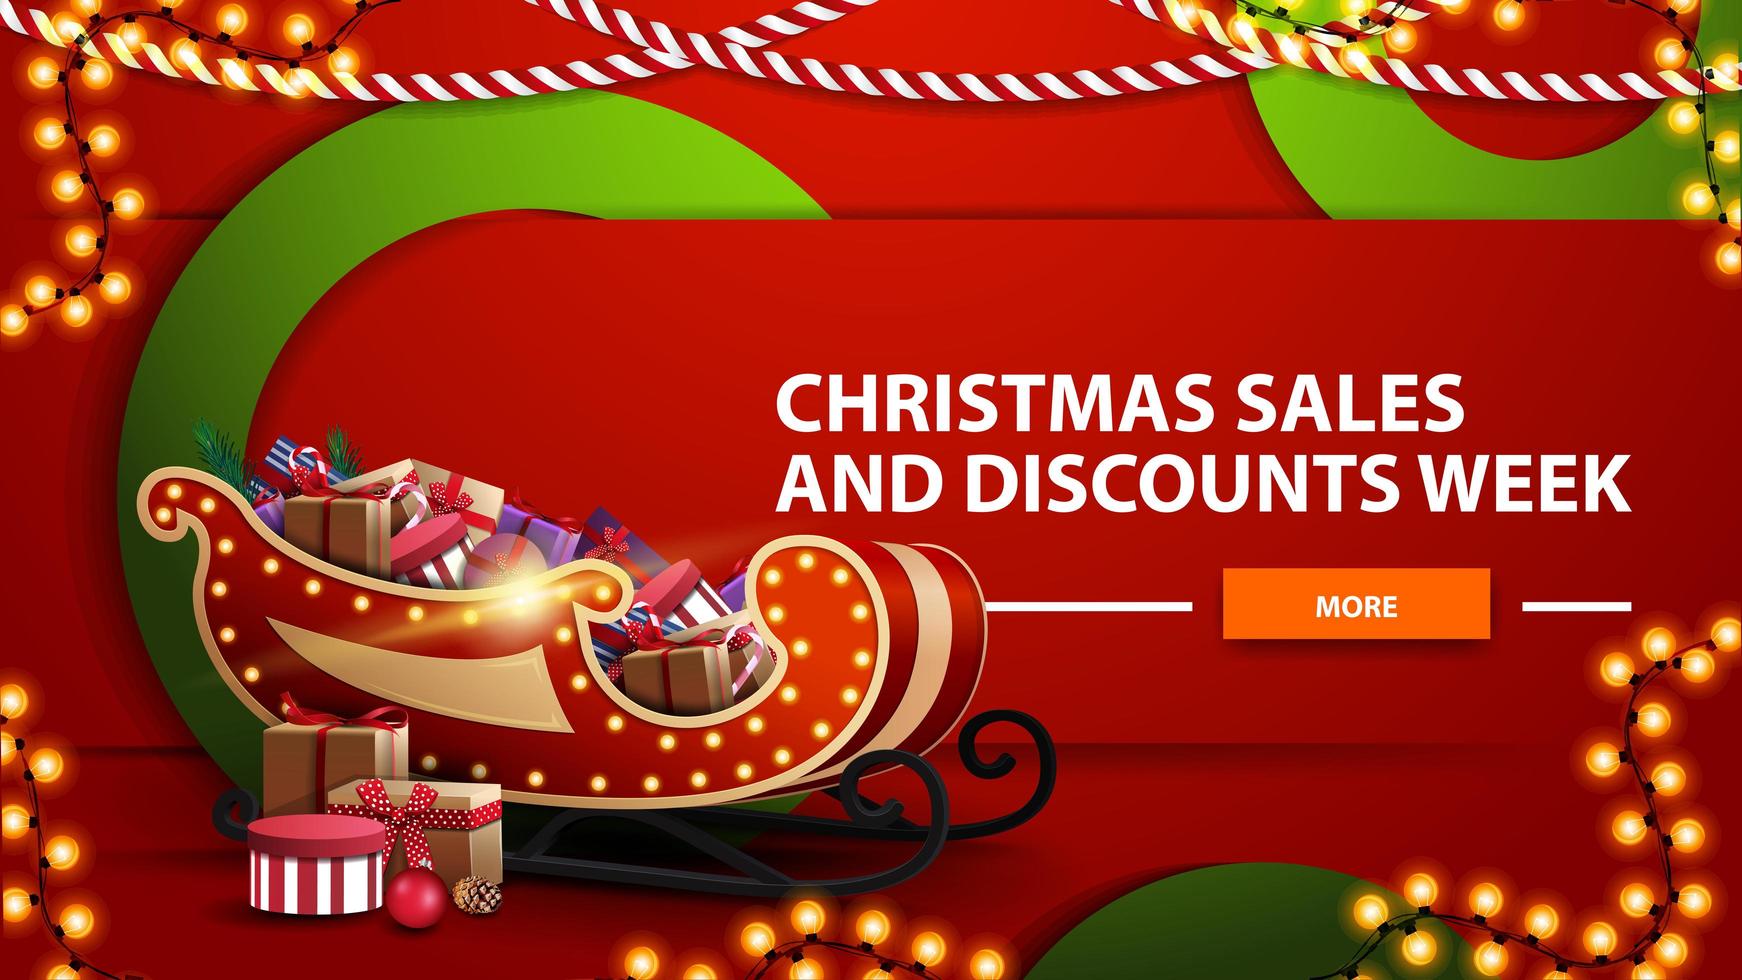 Venta de Navidad y semana de descuentos, banner web moderno horizontal rojo brillante con botón, grandes círculos verdes y trineo de santa con regalos vector